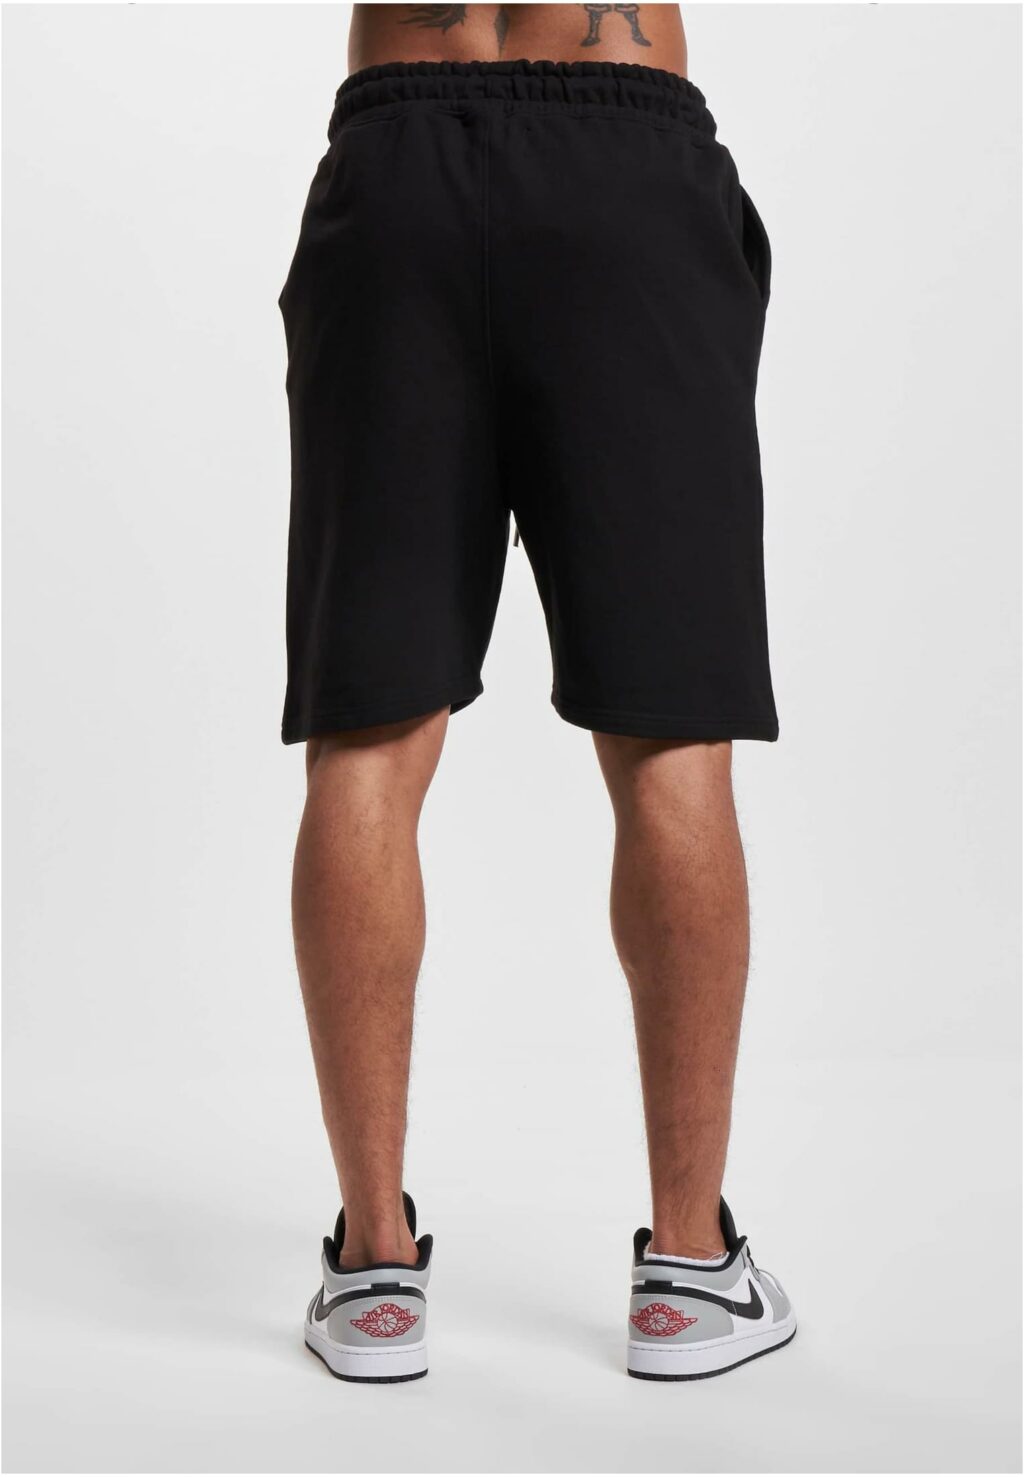 Rocawear Shorts Shorty black RWSH020